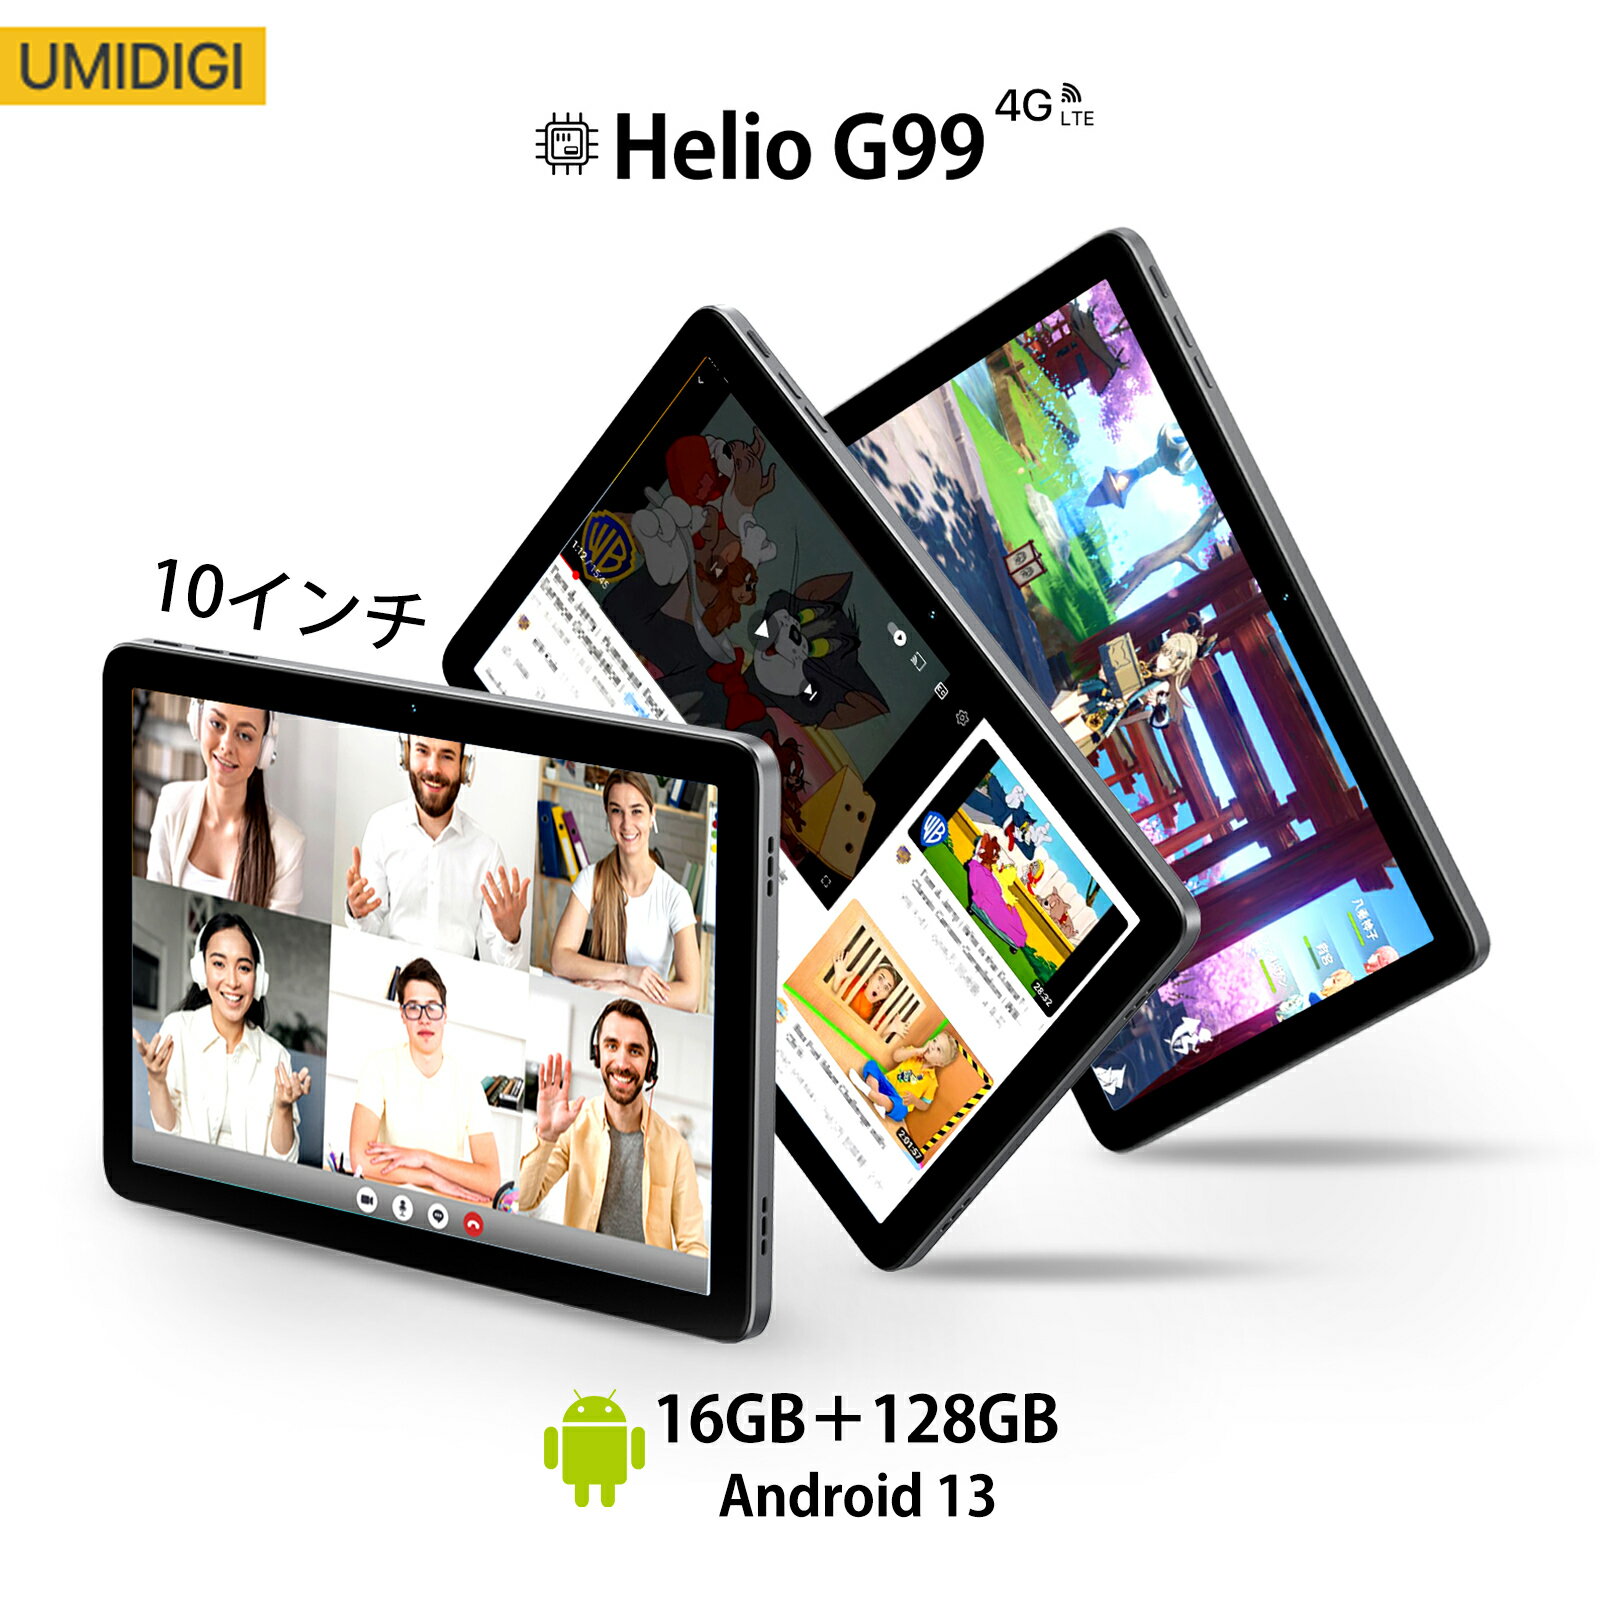 【UMIDIGI公式】タブレット G3 Tab ultra Helio G99チップ Android 13 8コア 8GB+8GB RAM+128GB ROM(1TBまで拡張) 10…